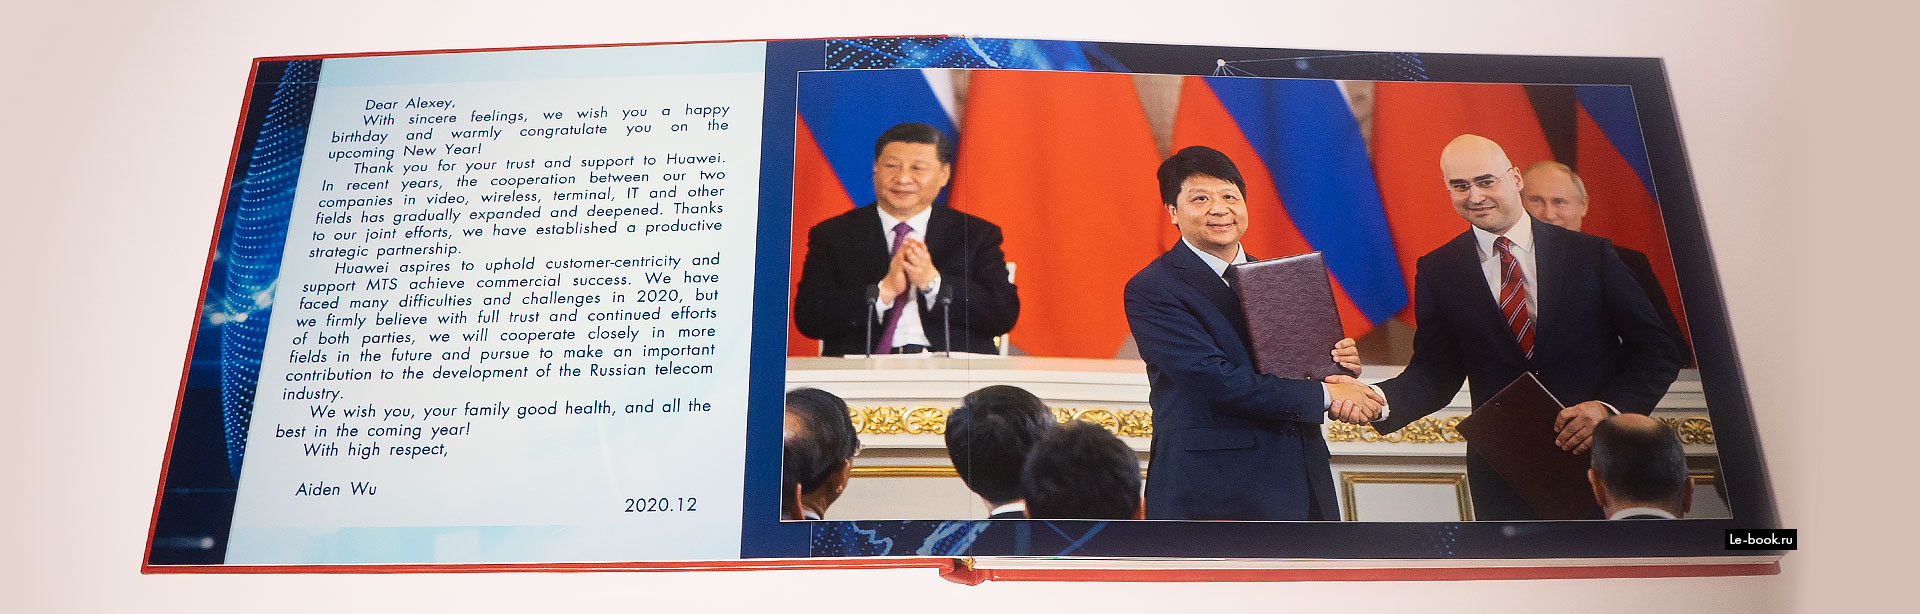 примеры корпоративных книг и подарочных фотокниг на примере награждения Huawei mts